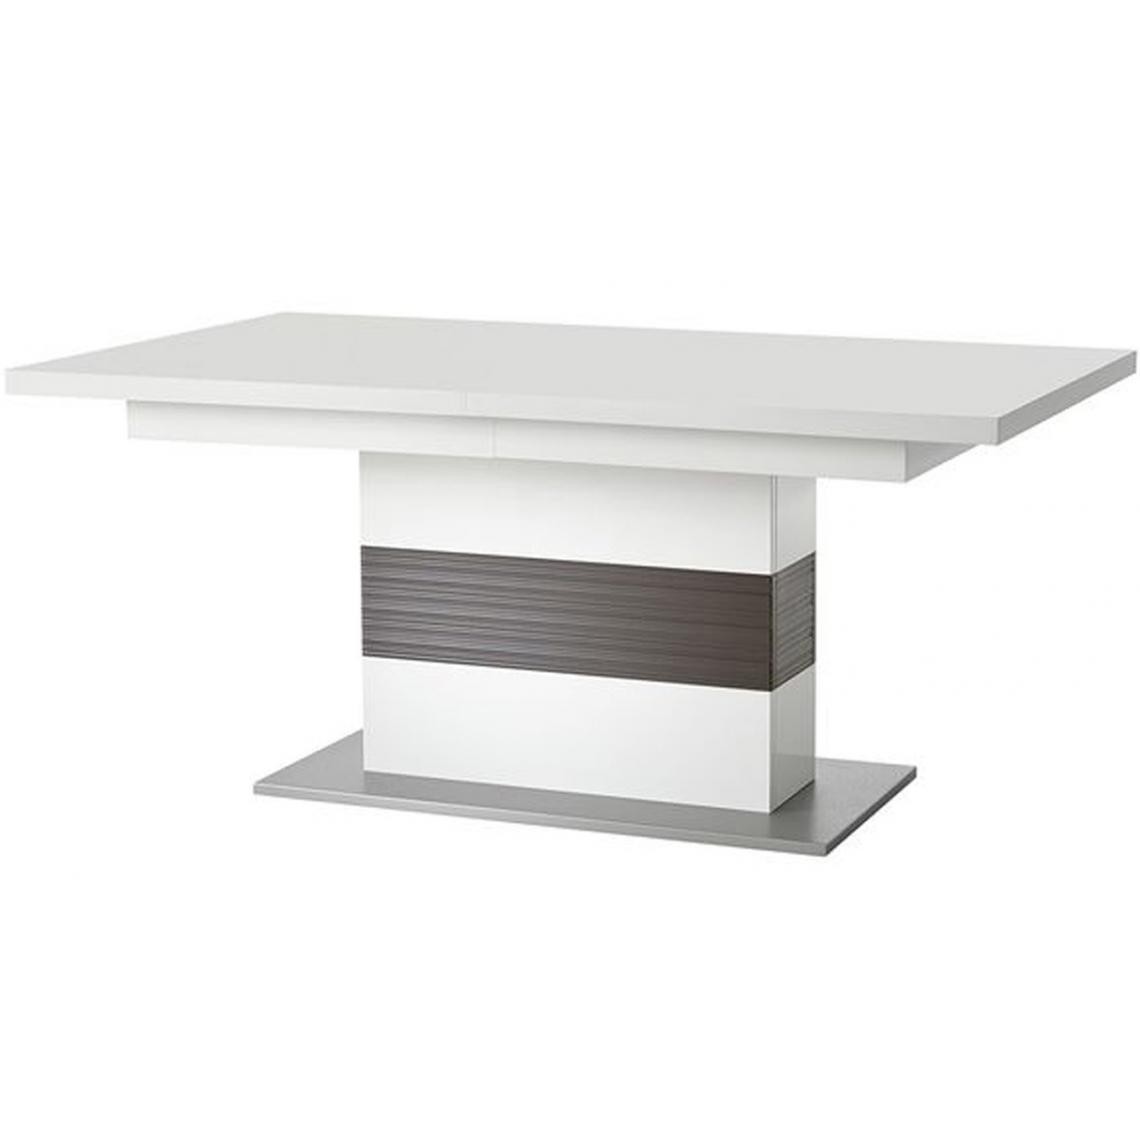 Pegane - Table à manger extensible coloris blanc et gris - 180-280 x 77 x 100 cm - Tables à manger